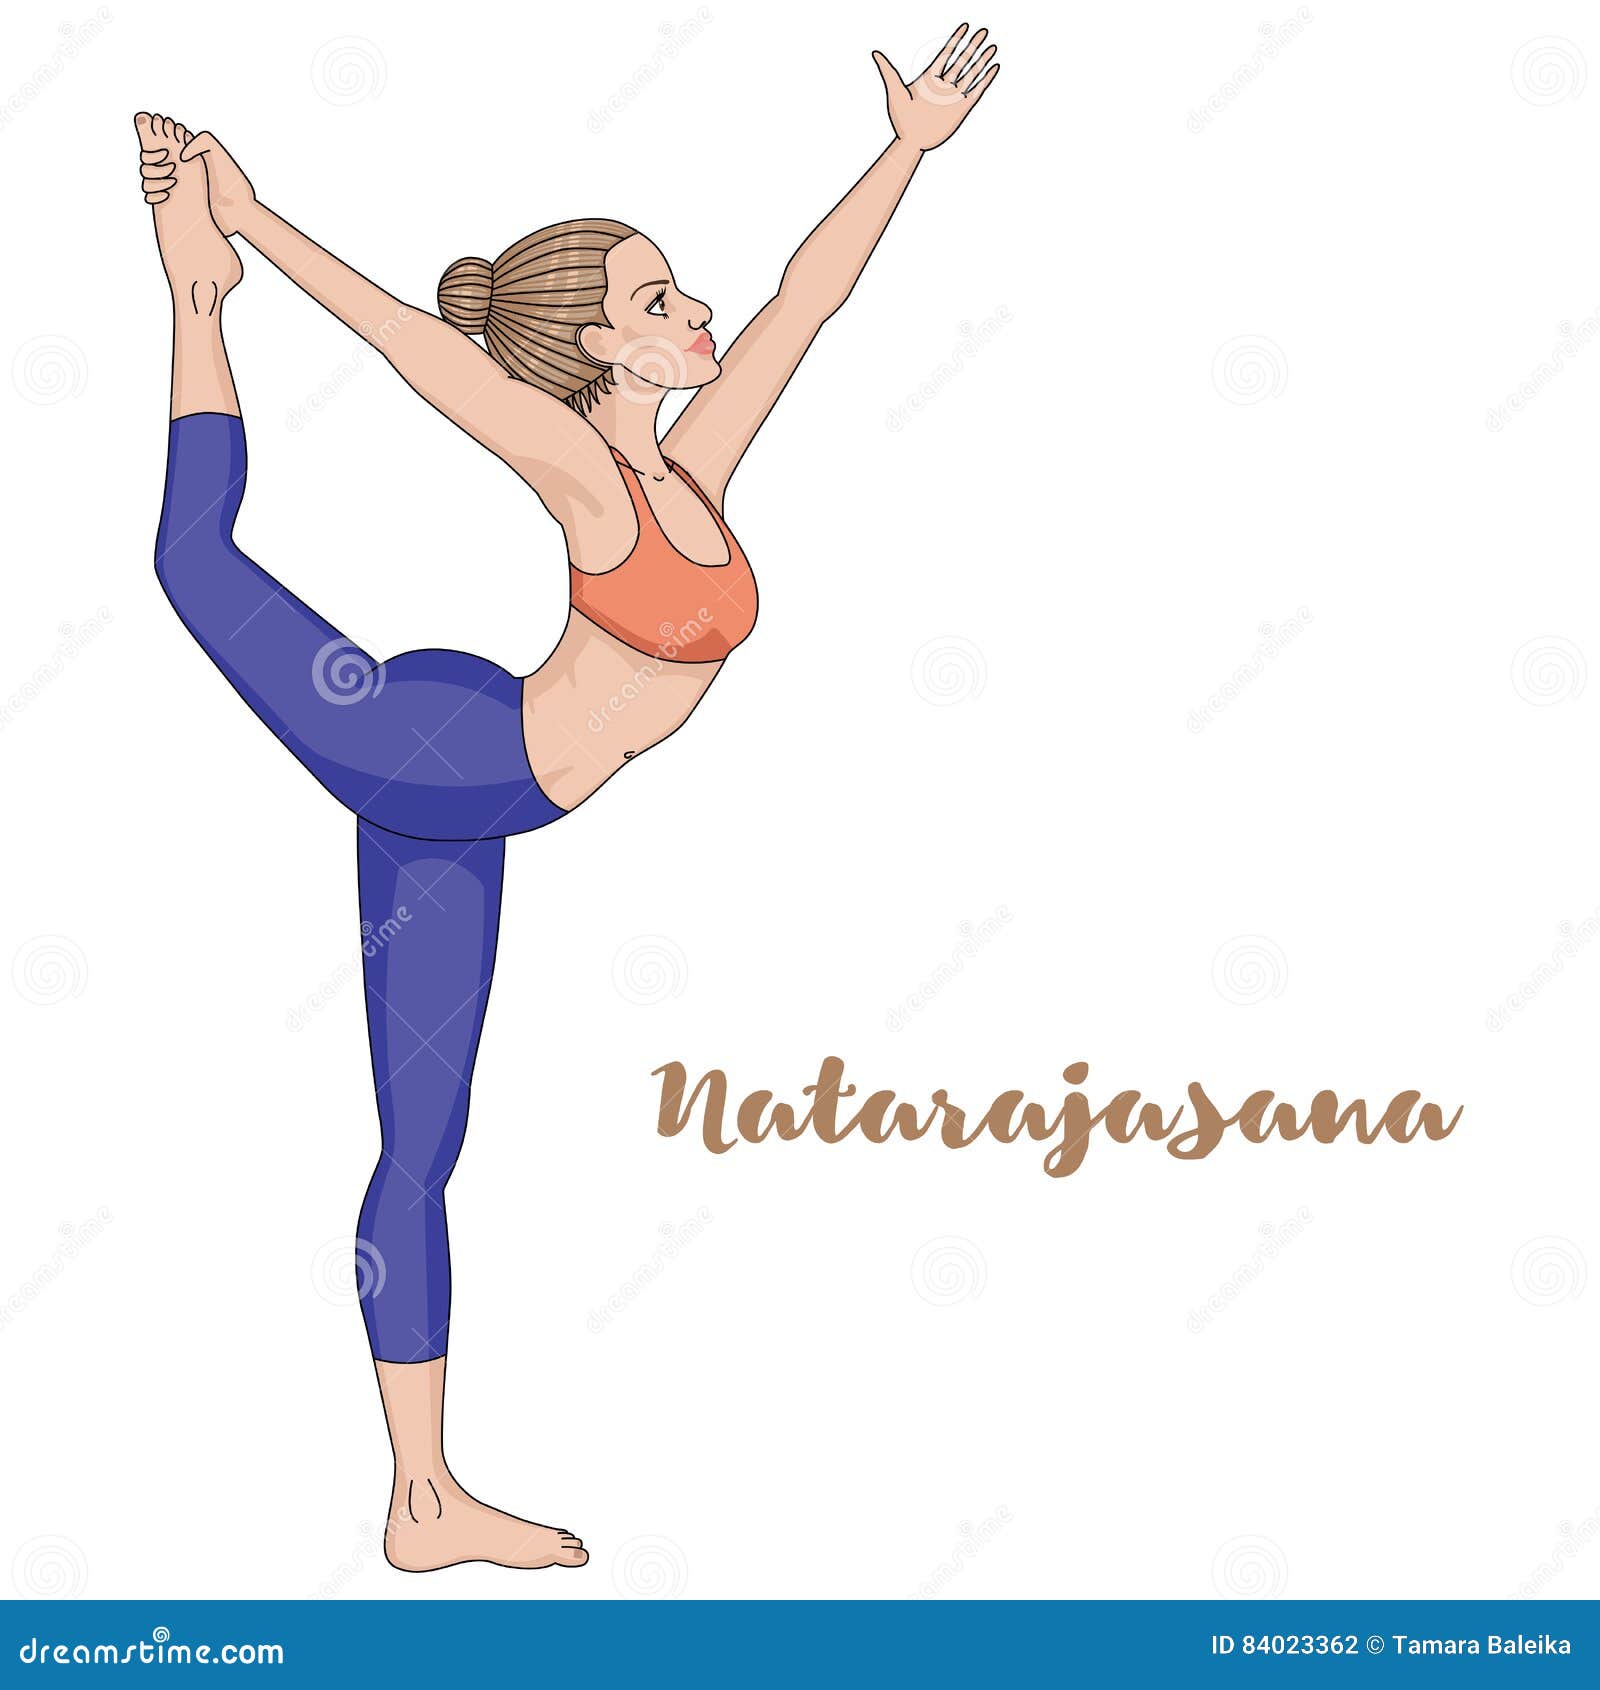 Natarajasana Yoga: इस योग से मांसपेशियों की समस्या से मिलेगा छुटकारा, योग  करते समय इन सावधानियों का रखे ध्यान